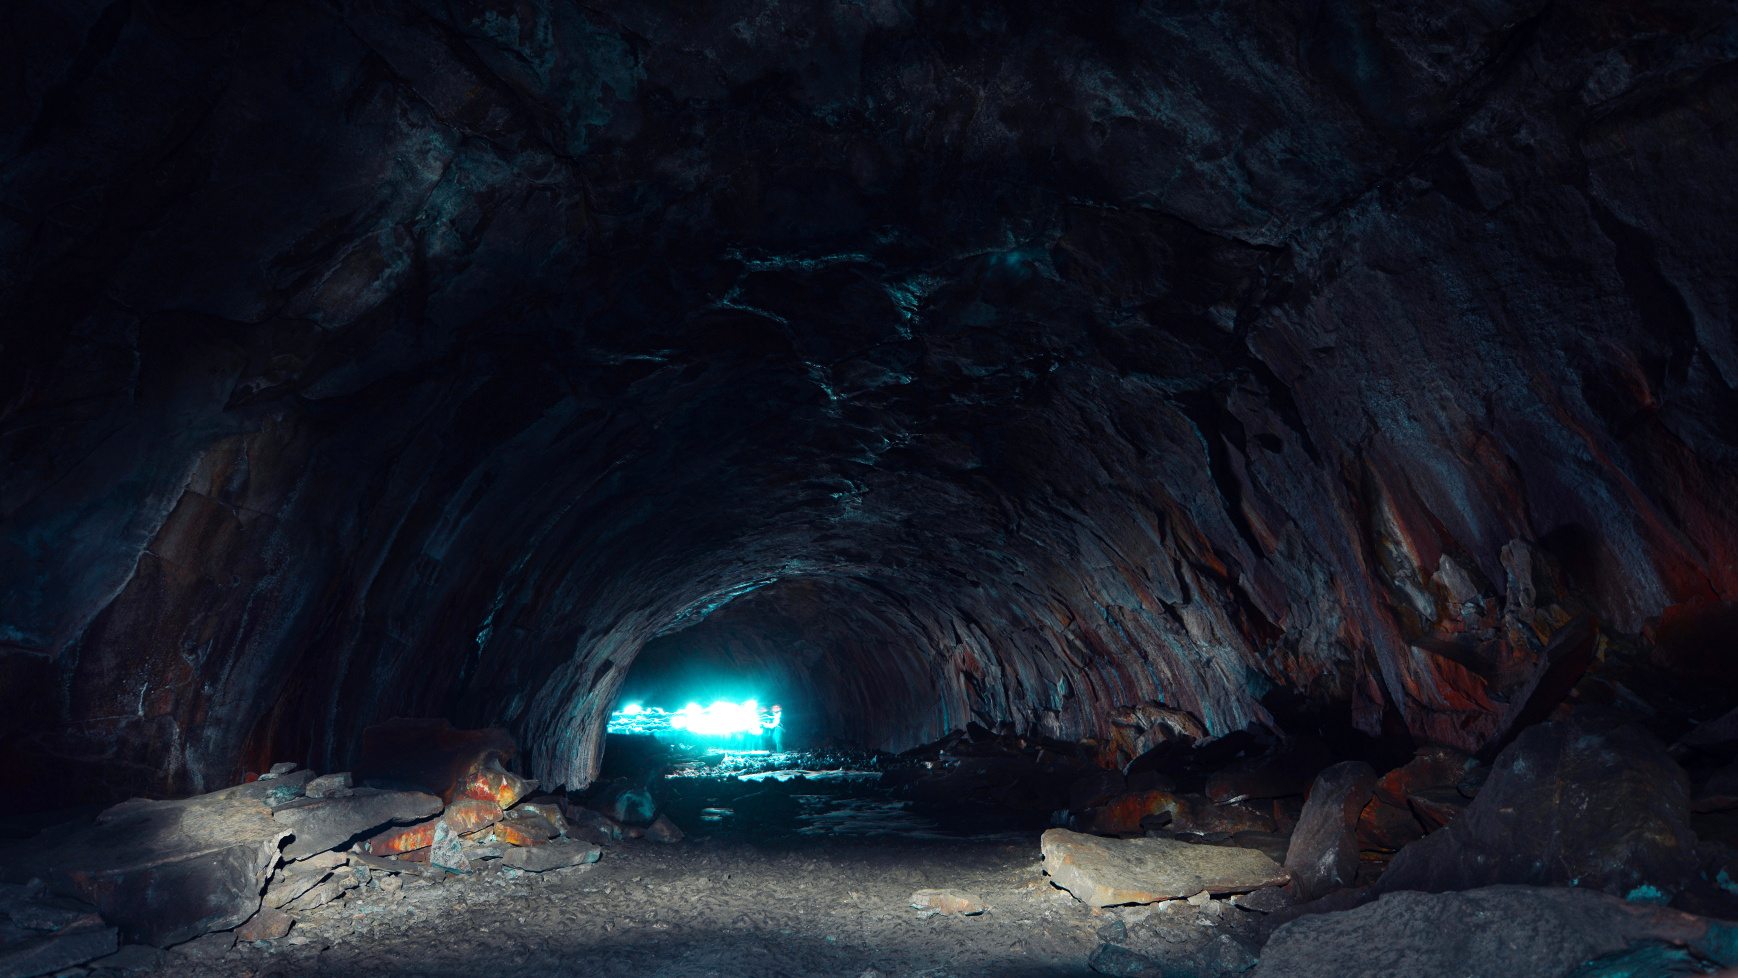 Qədim super magistrallar: Şotlandiyadan Türkiyəyə qədər uzanan 12,000 illik nəhəng yeraltı tunellər 1